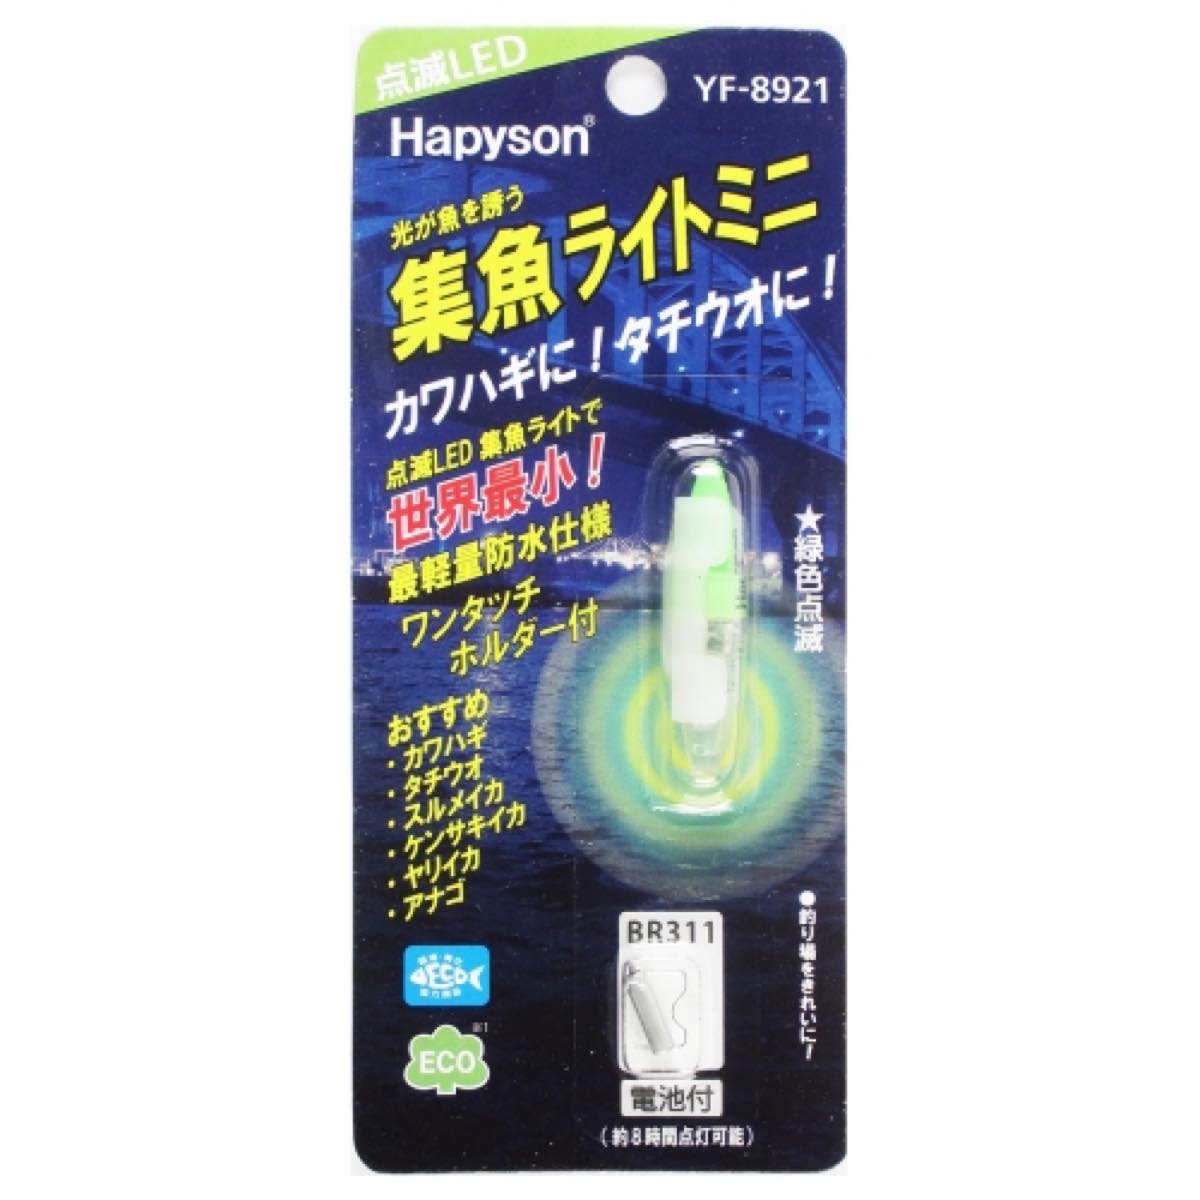 ハピソン 集魚ライトミニ(点滅タイプ) YF-8921 緑色点滅